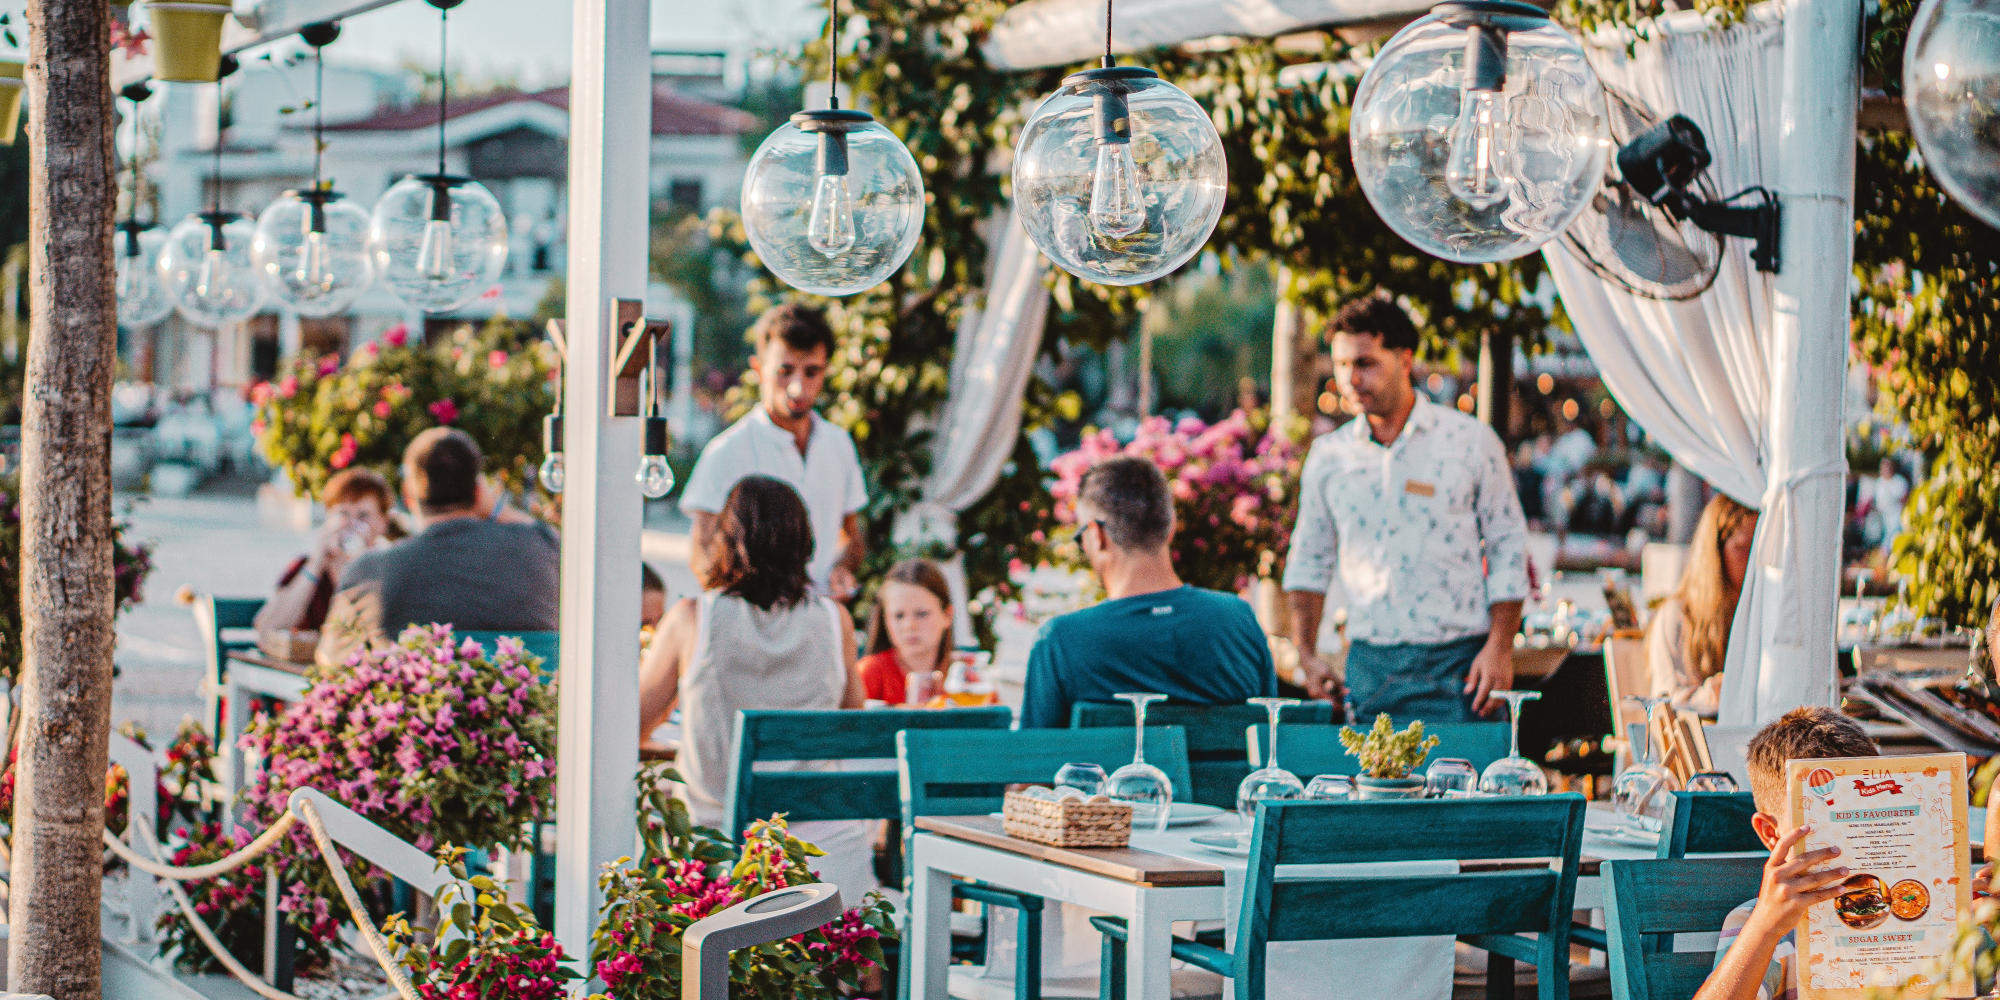 Familienurlaub in Side / Restaurant an der türkischen Riviera